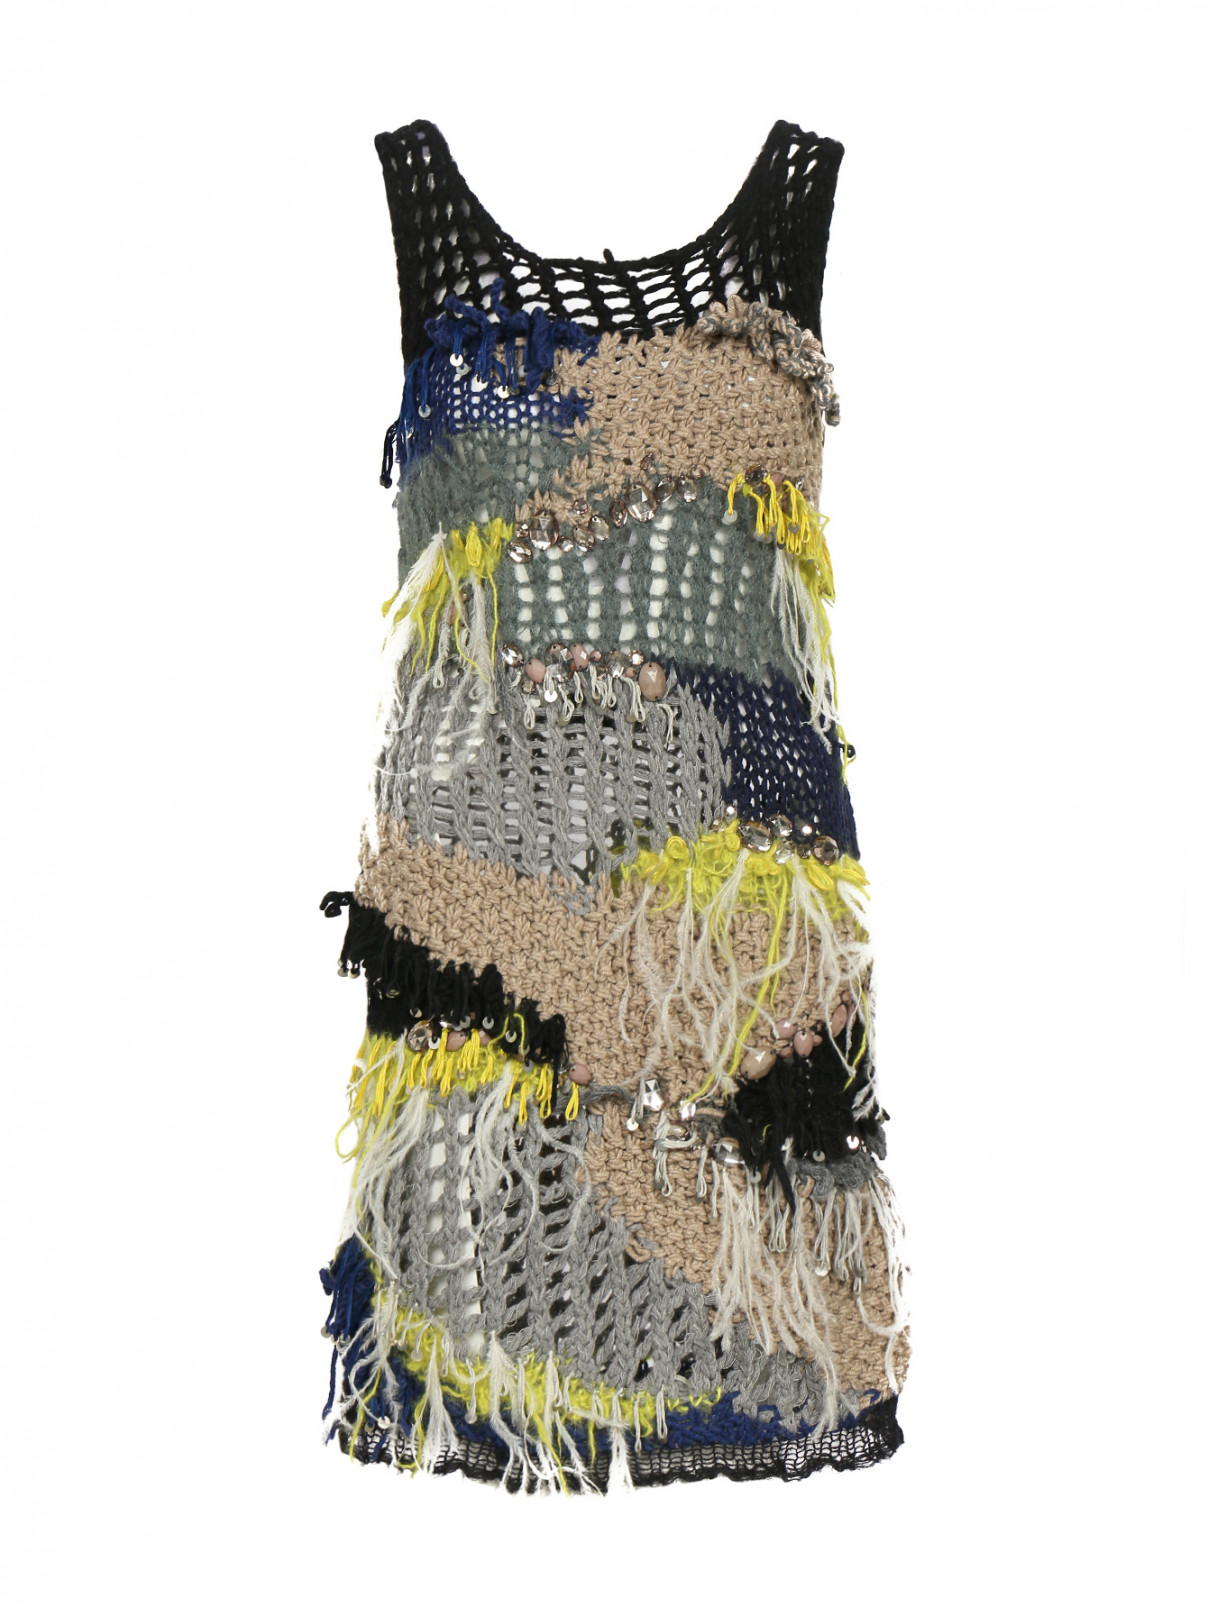 Трикотажное платье крупной вязки с узором и декором из пайеток, перьев и кристаллов Iceberg  –  Общий вид  – Цвет:  Узор